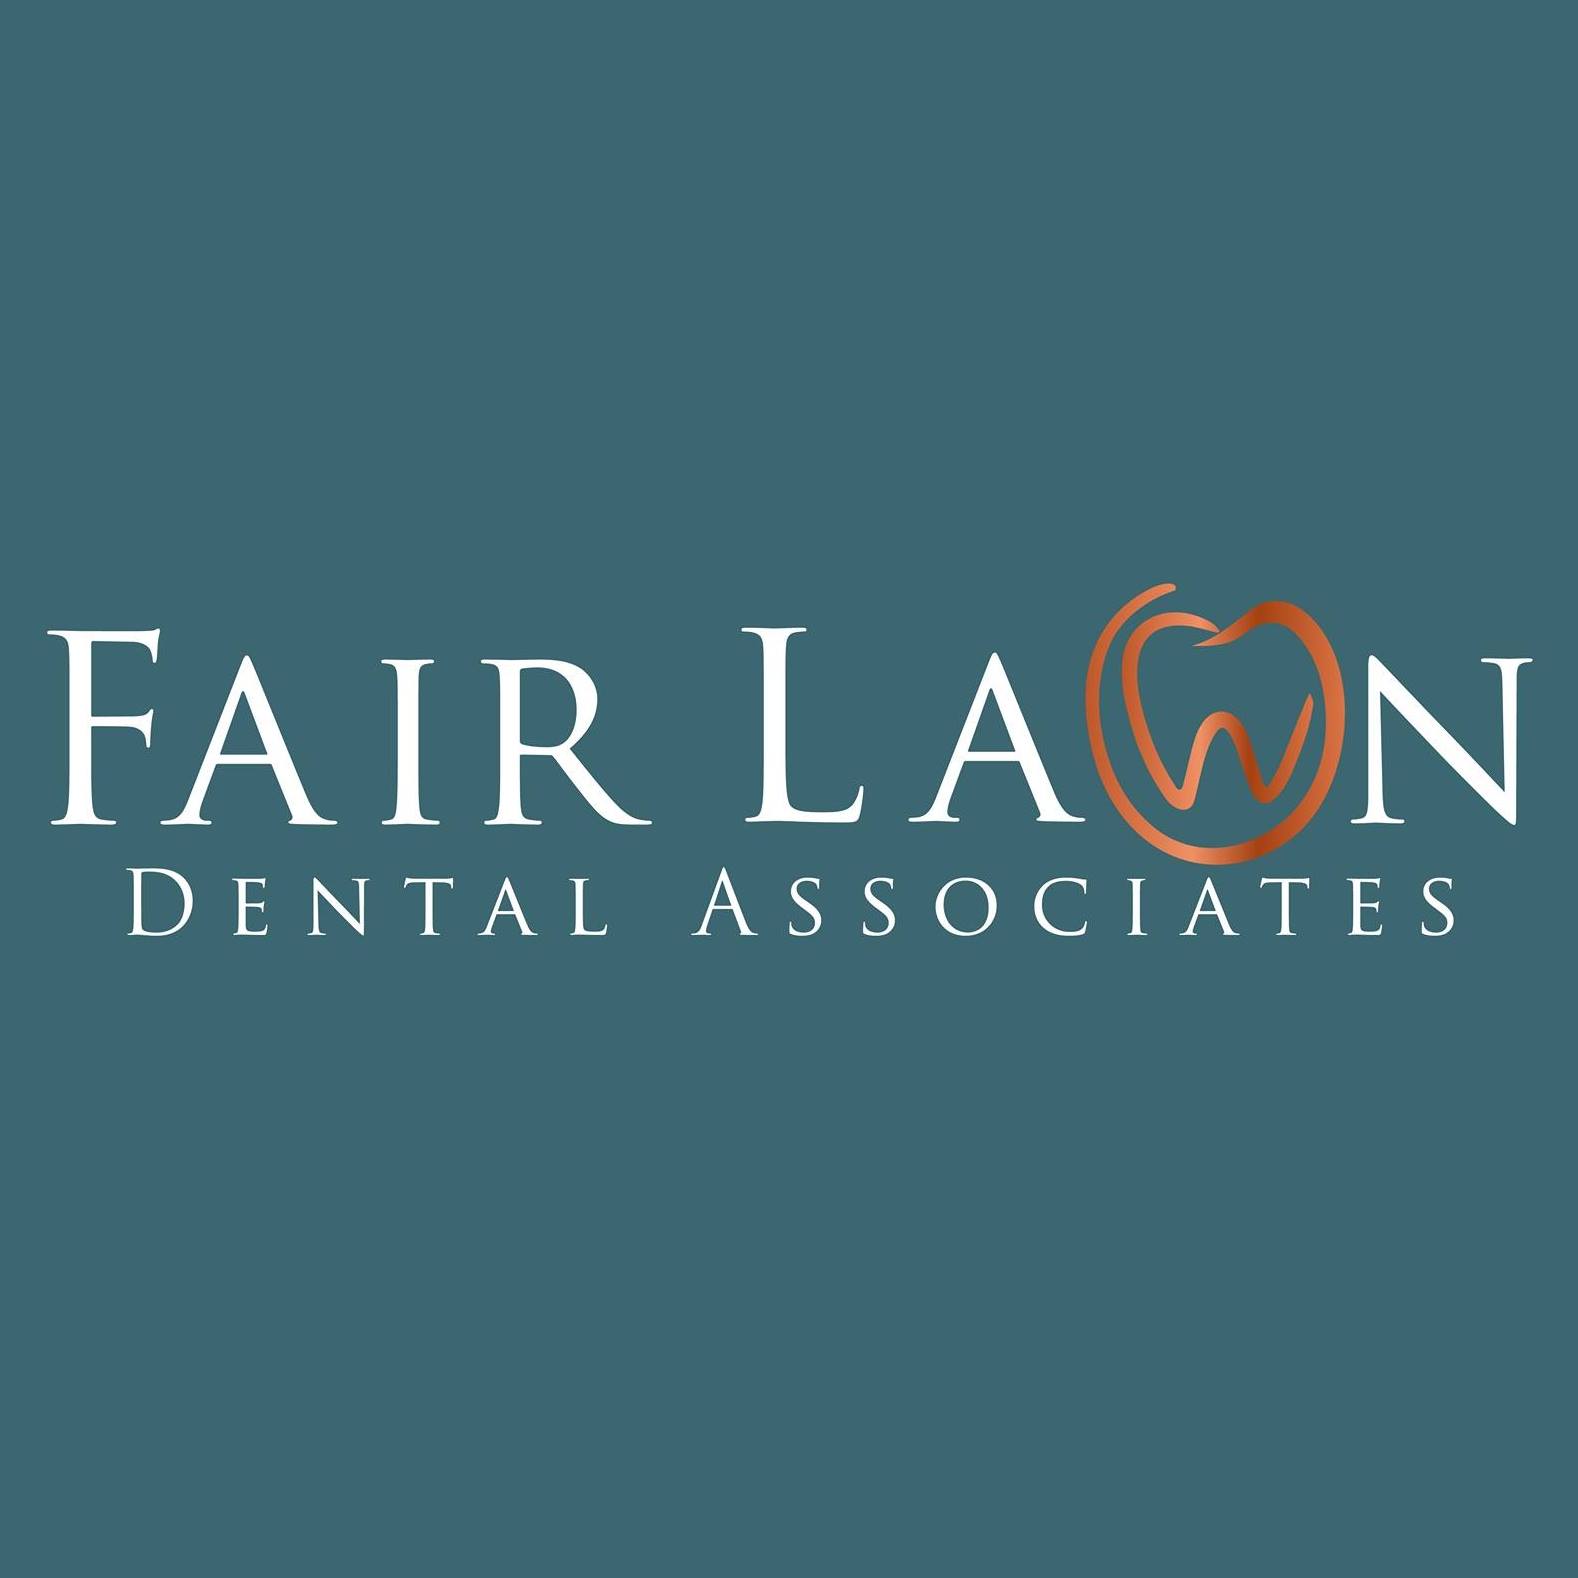 Fair Lawn Dental Associates